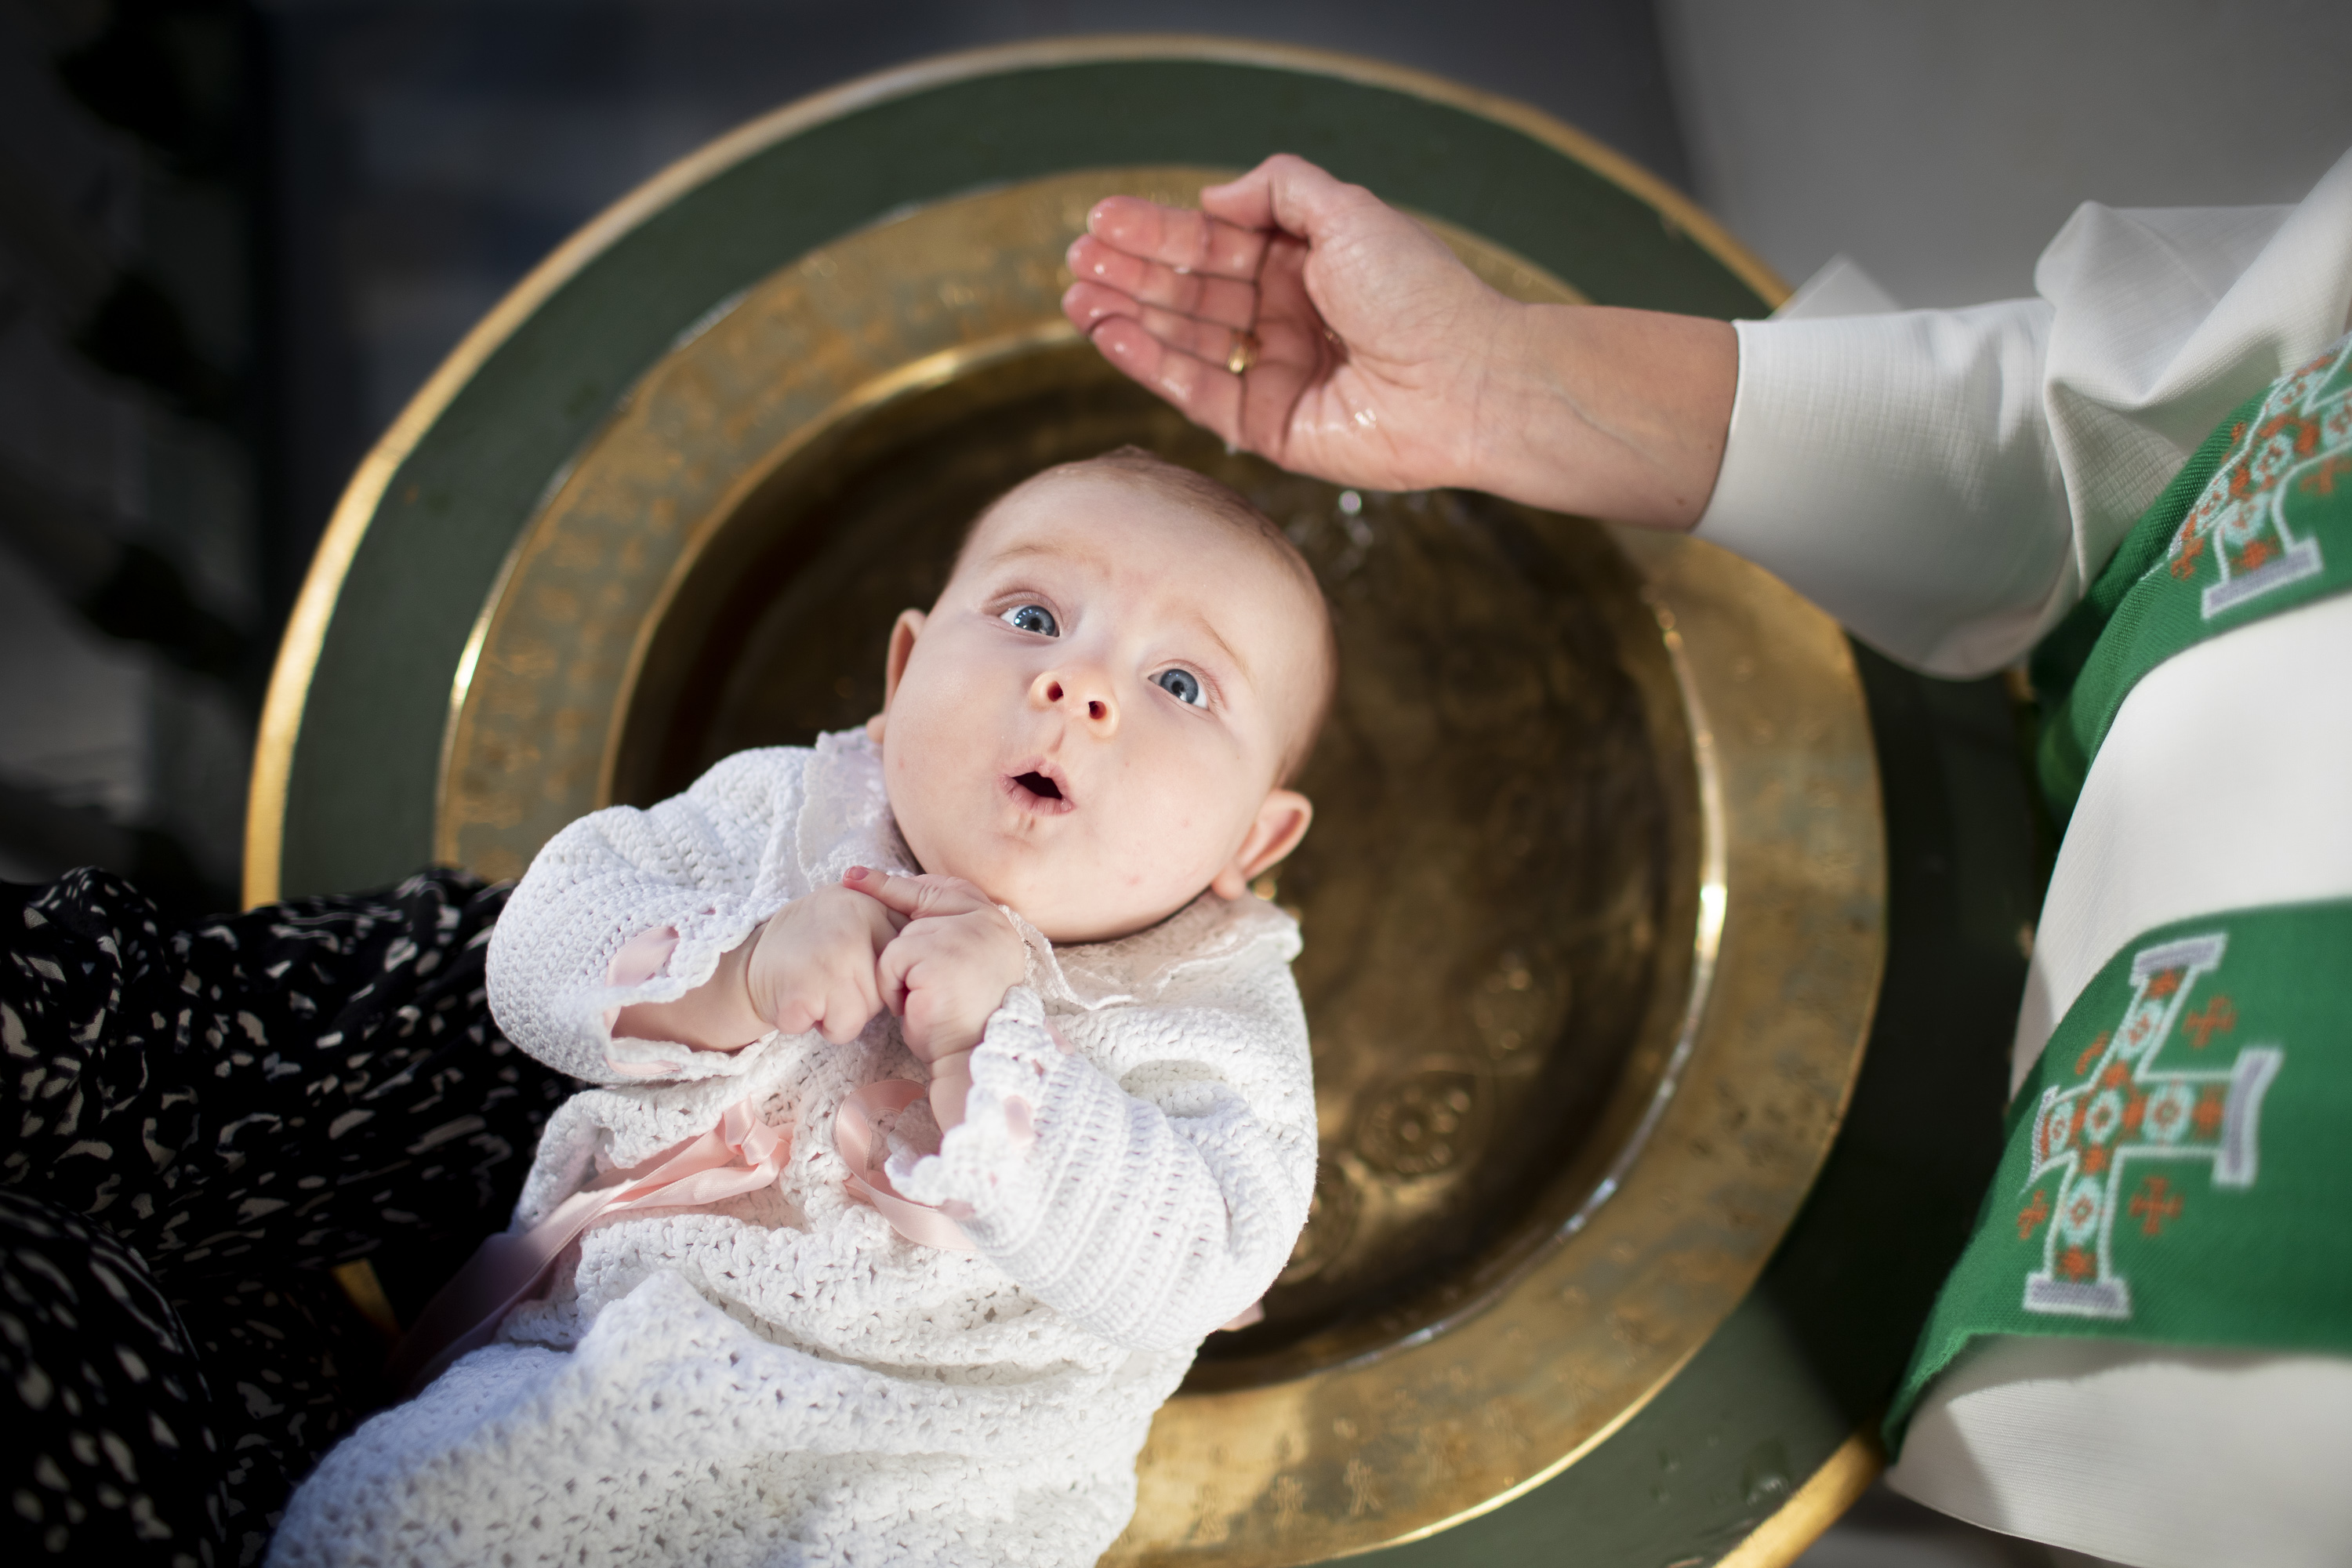 Alle mennesker er velkommen til dåp i Den norske kirke. Foto: Bo Mathisen / Den norske kirke